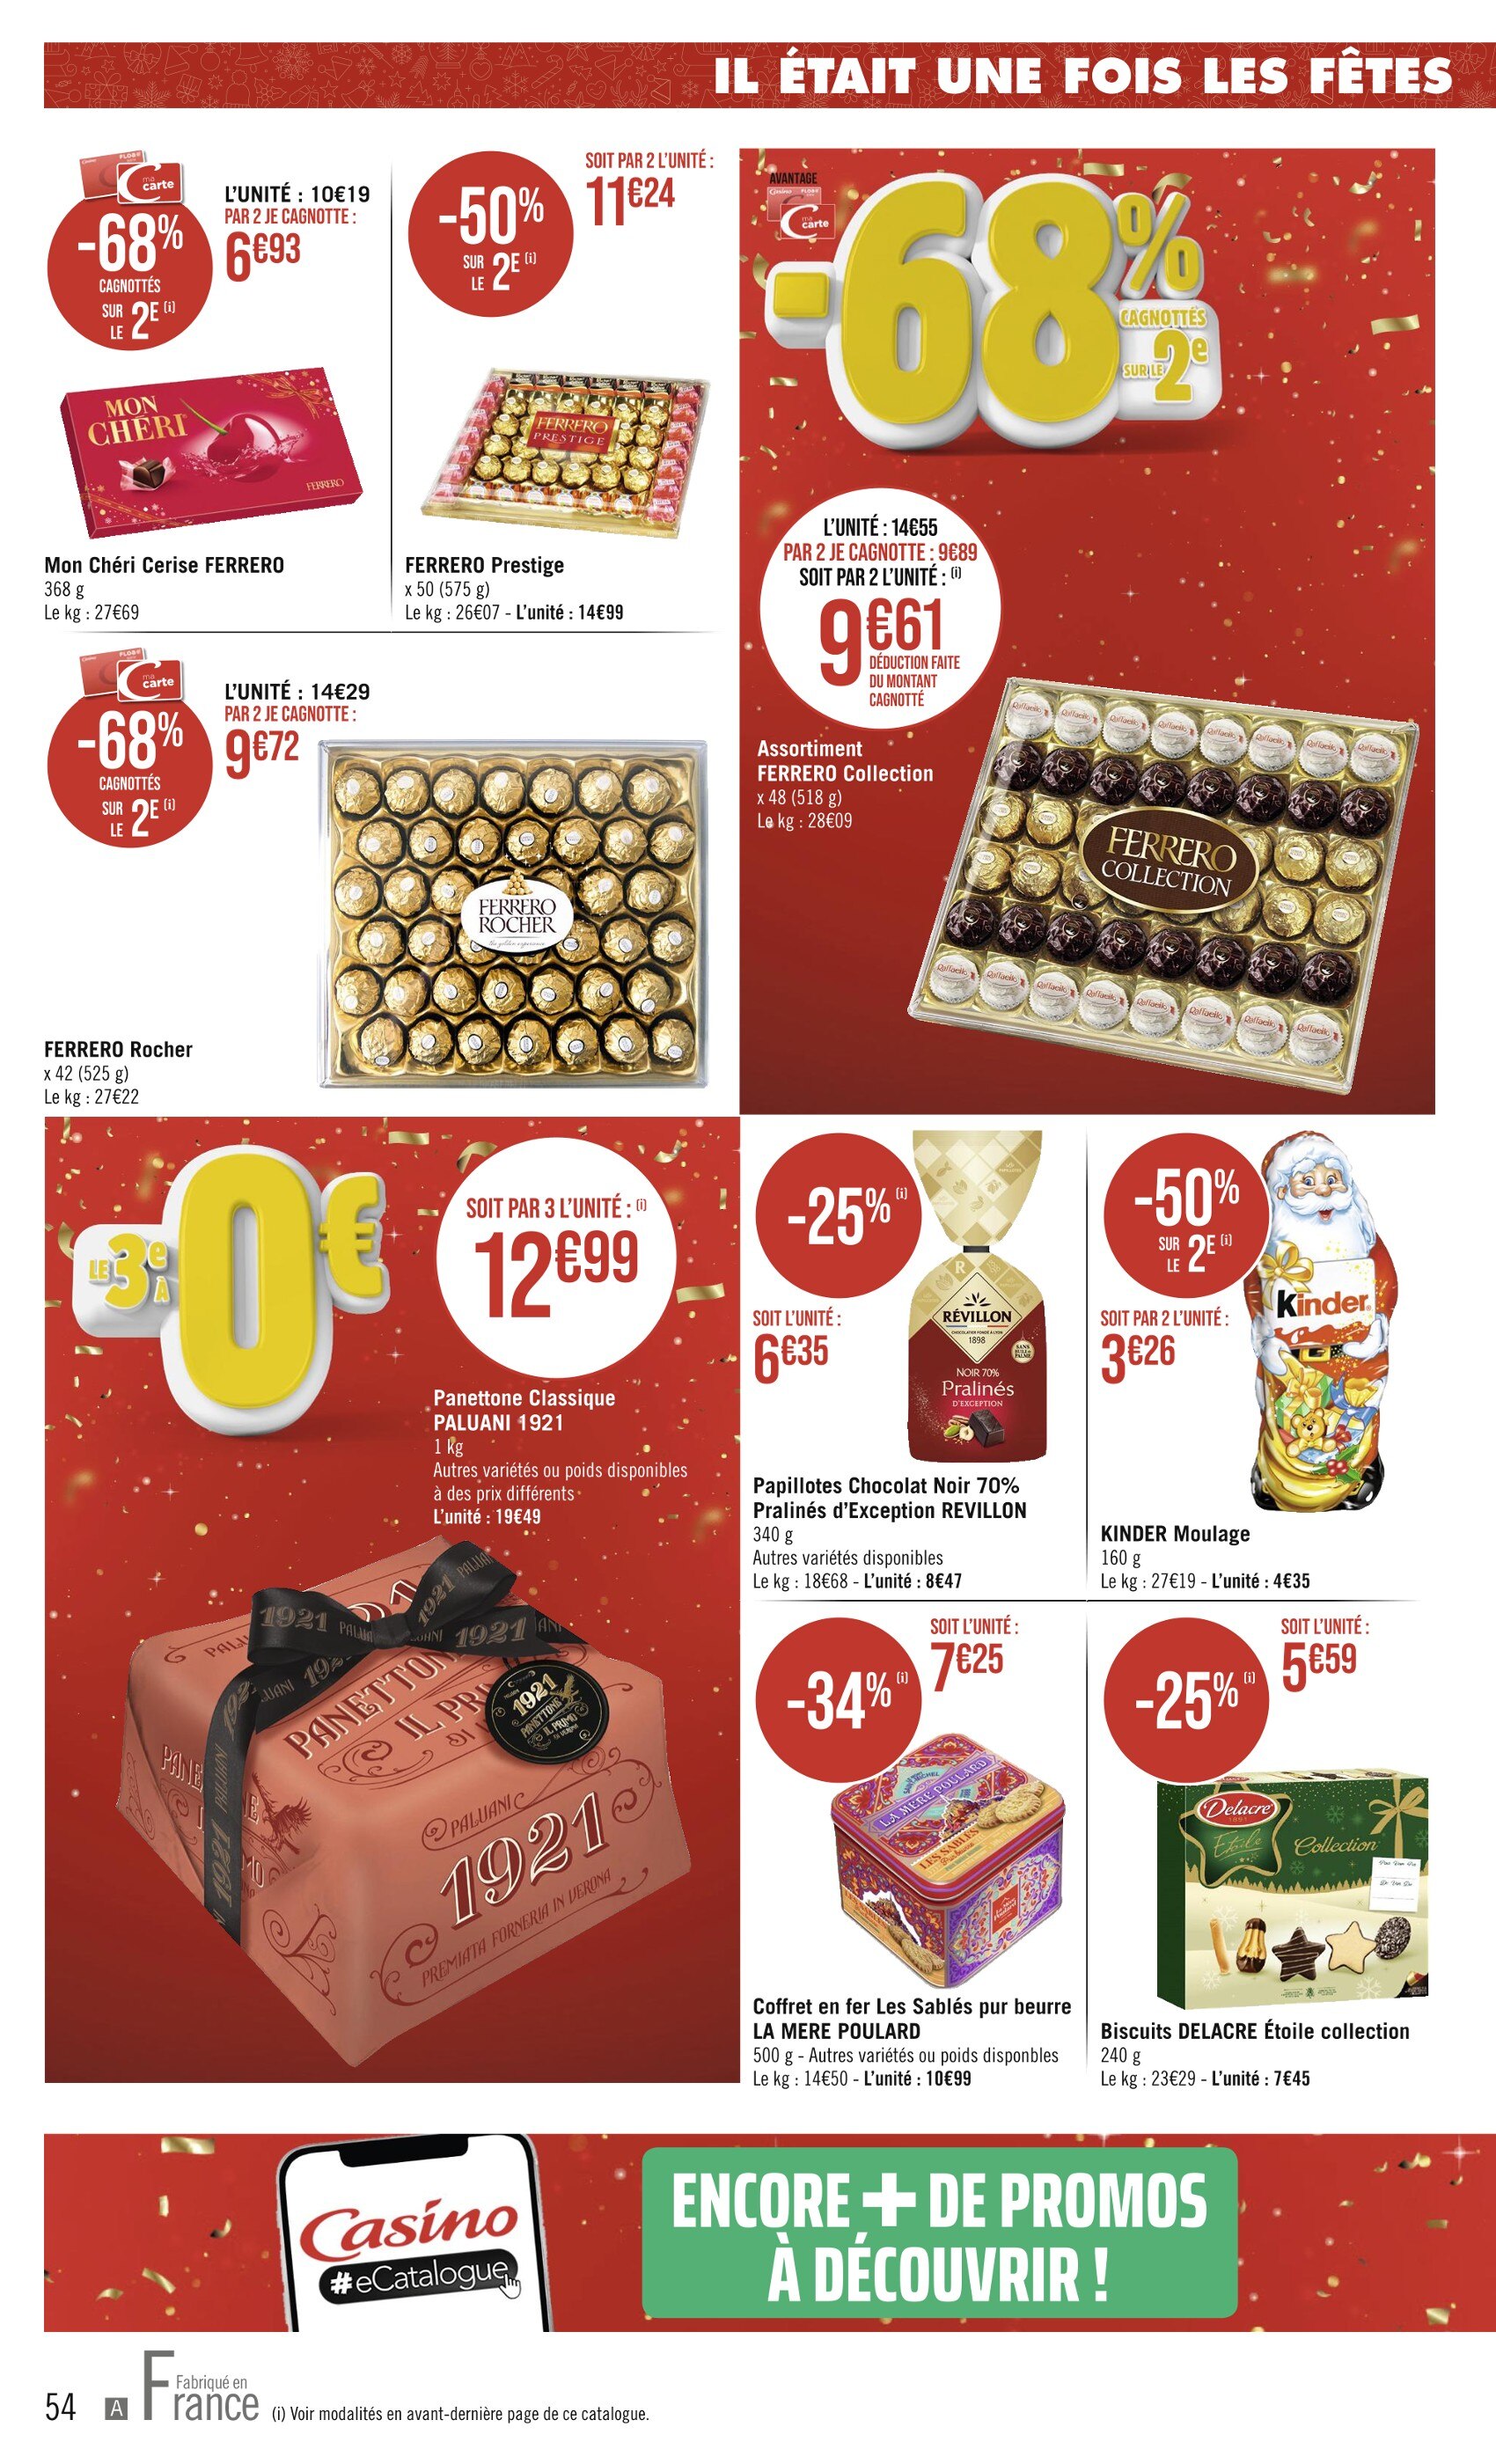 Achat Chocolat De Noël pas cher ᐅ Promo et meilleur prix Chocolat De Noël